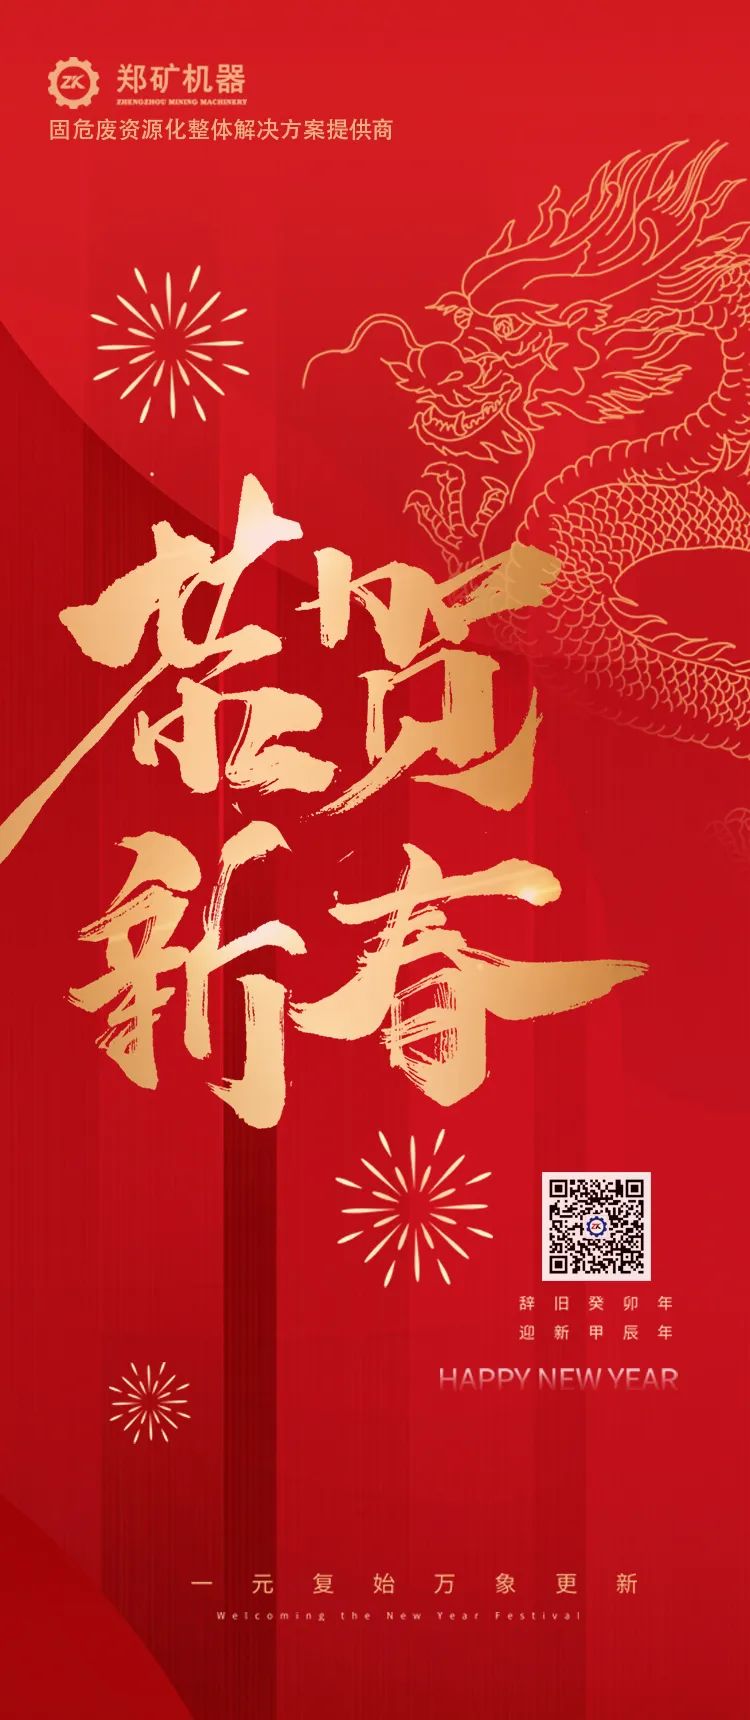 郑矿机器恭祝：新春快乐，龍行龘龘，前程朤朤